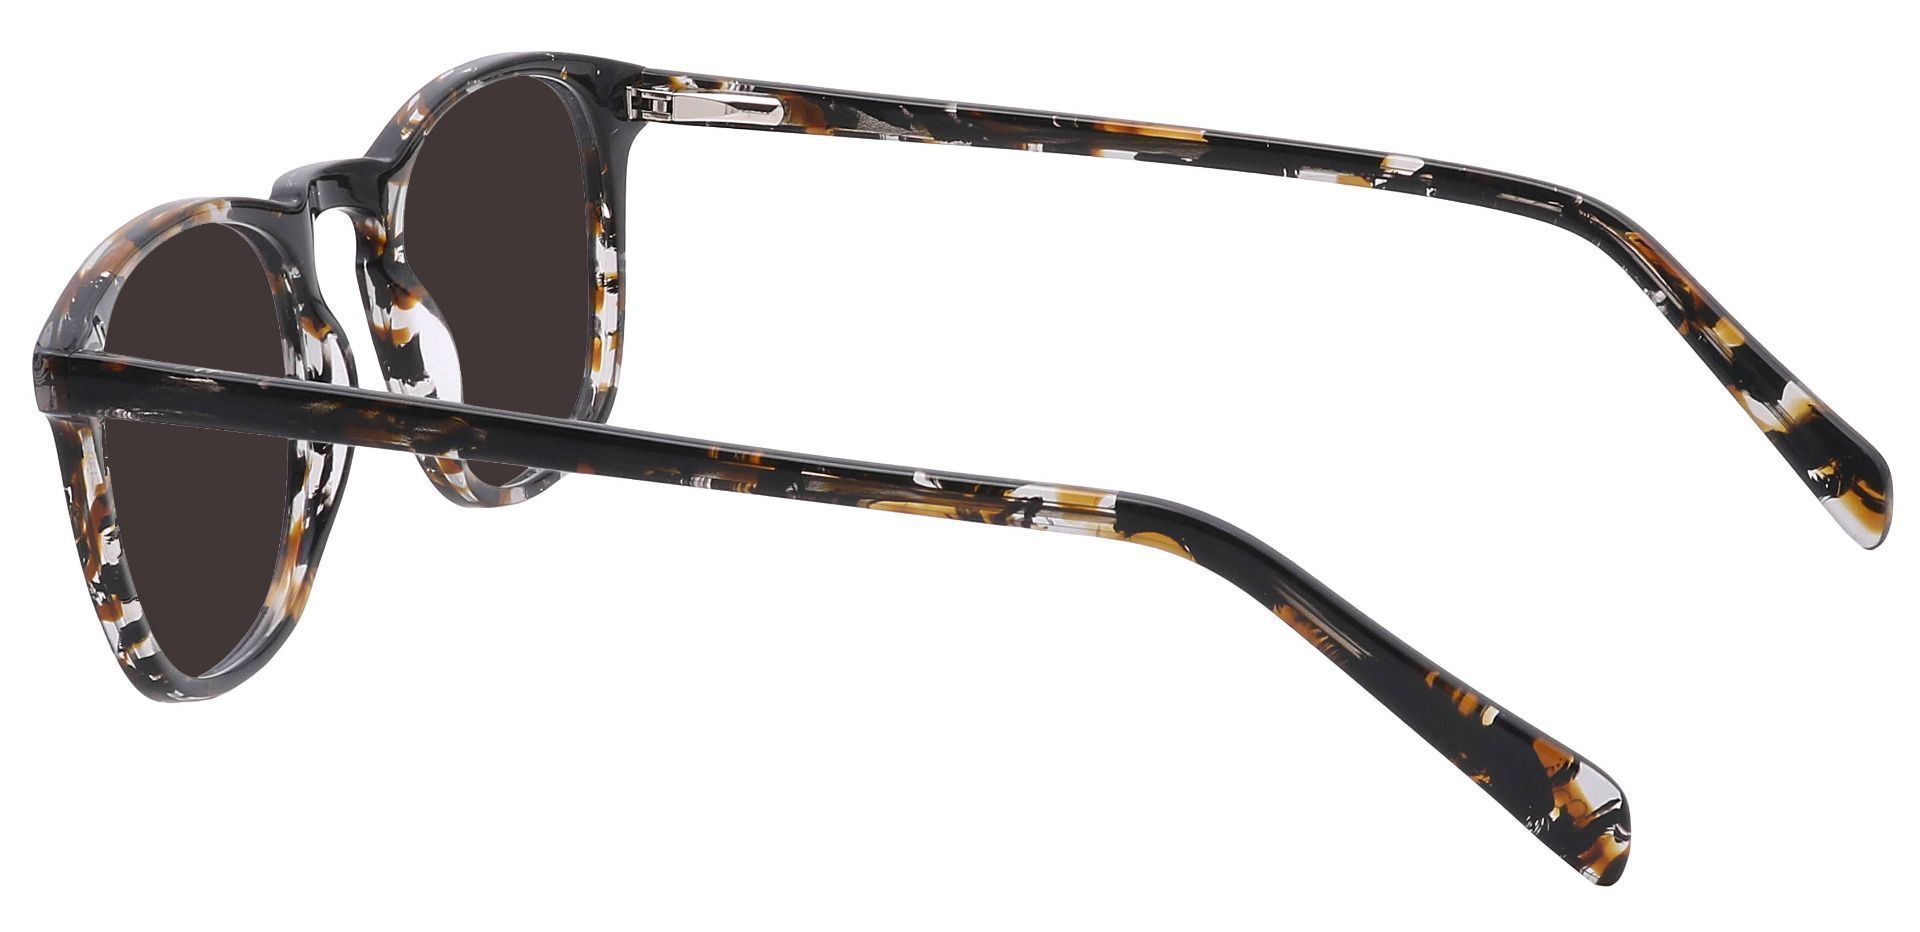 Venti Square Non-Rx Sunglasses - Black Frame With Gray Lenses